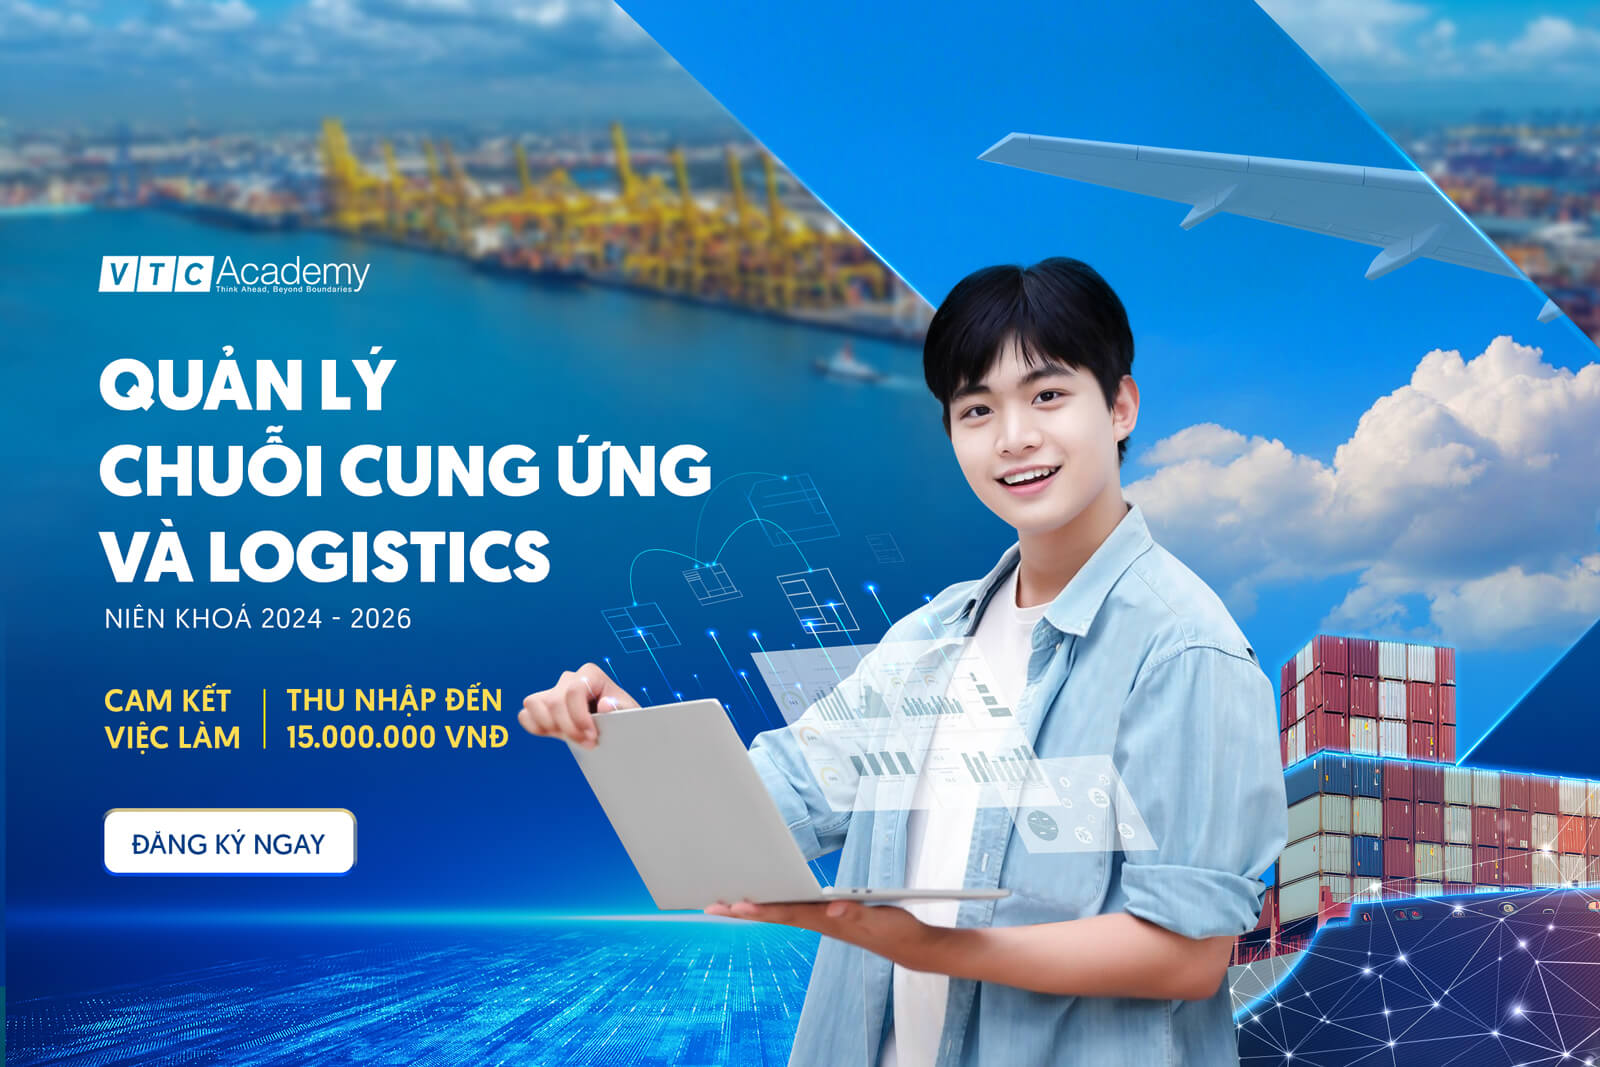 VTC Academy chính thức ra mắt ngành học mới – Quản lý chuỗi cung ứng và Logistics